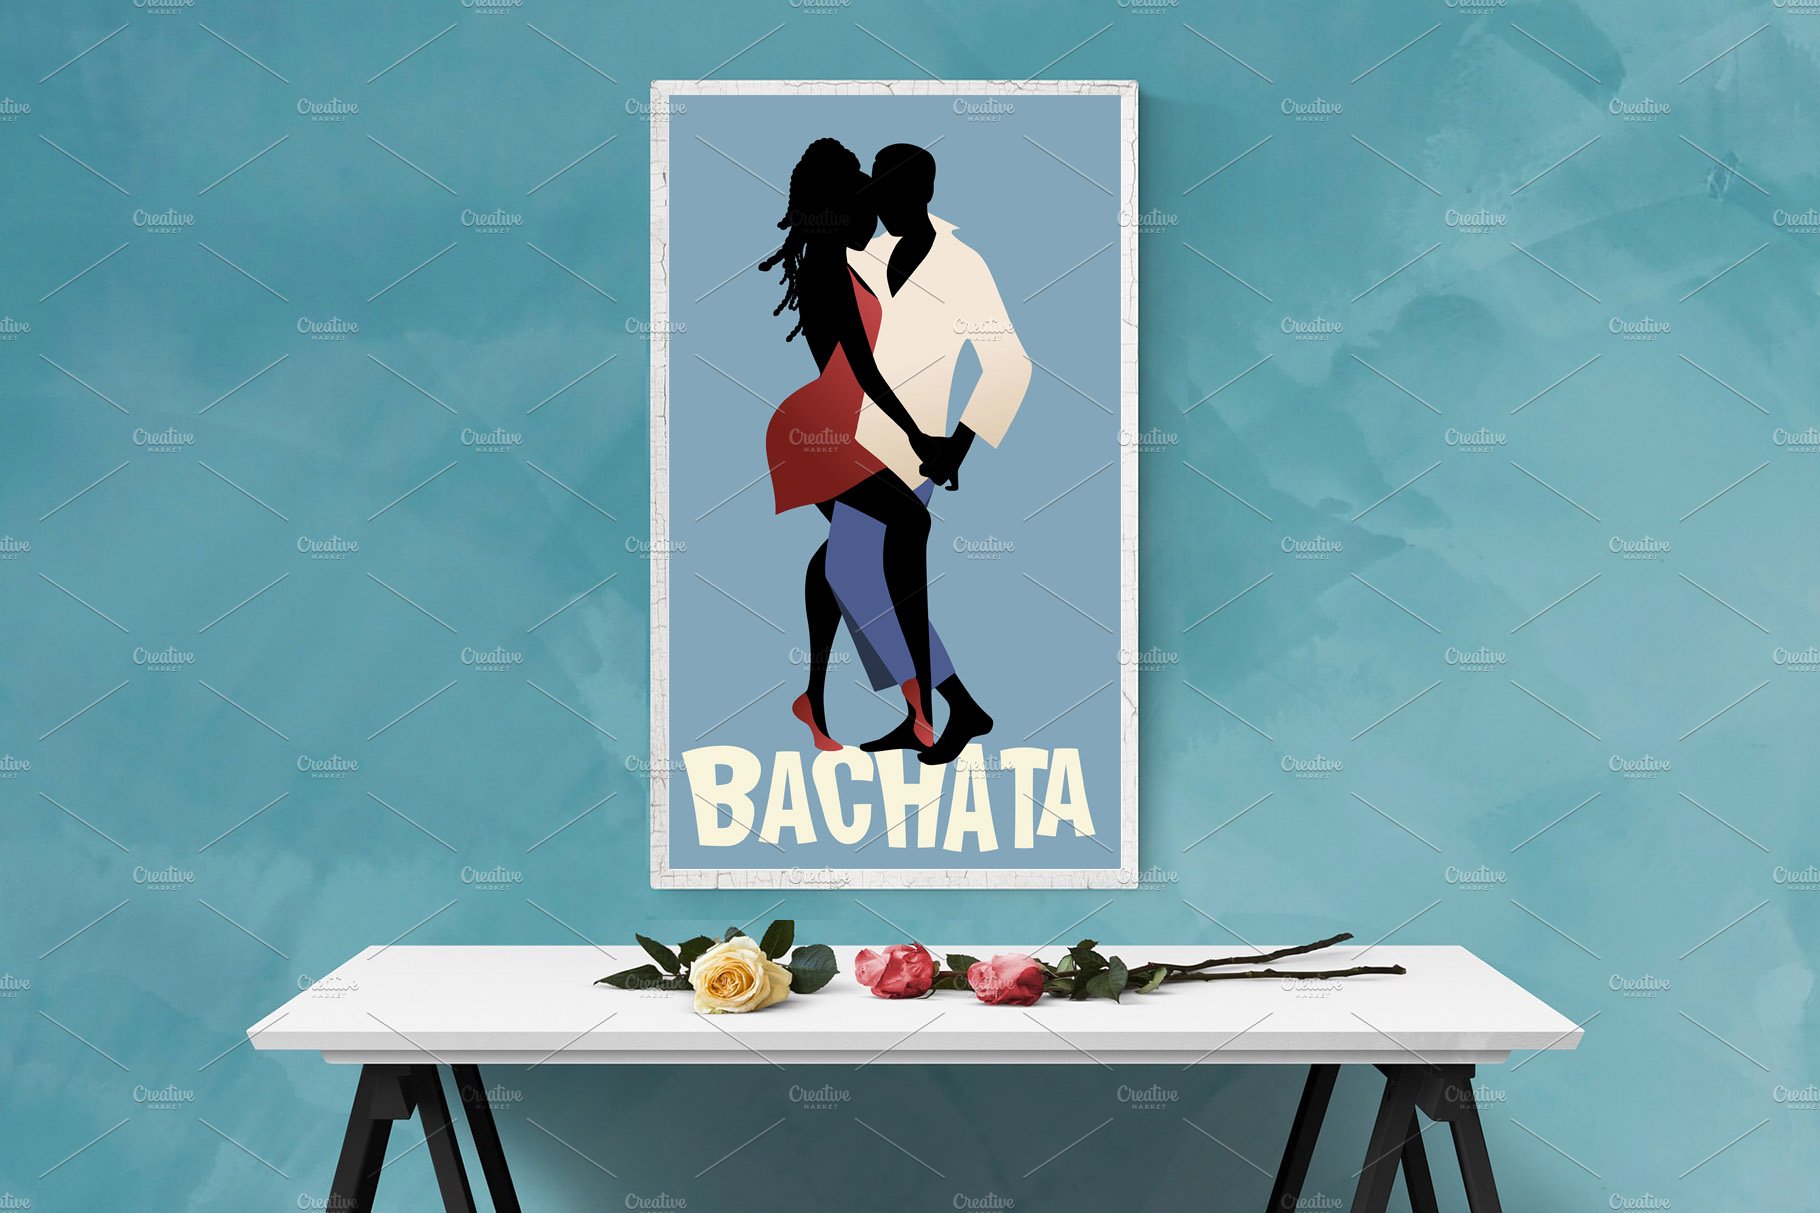 Couple dancing Bachata cover image.